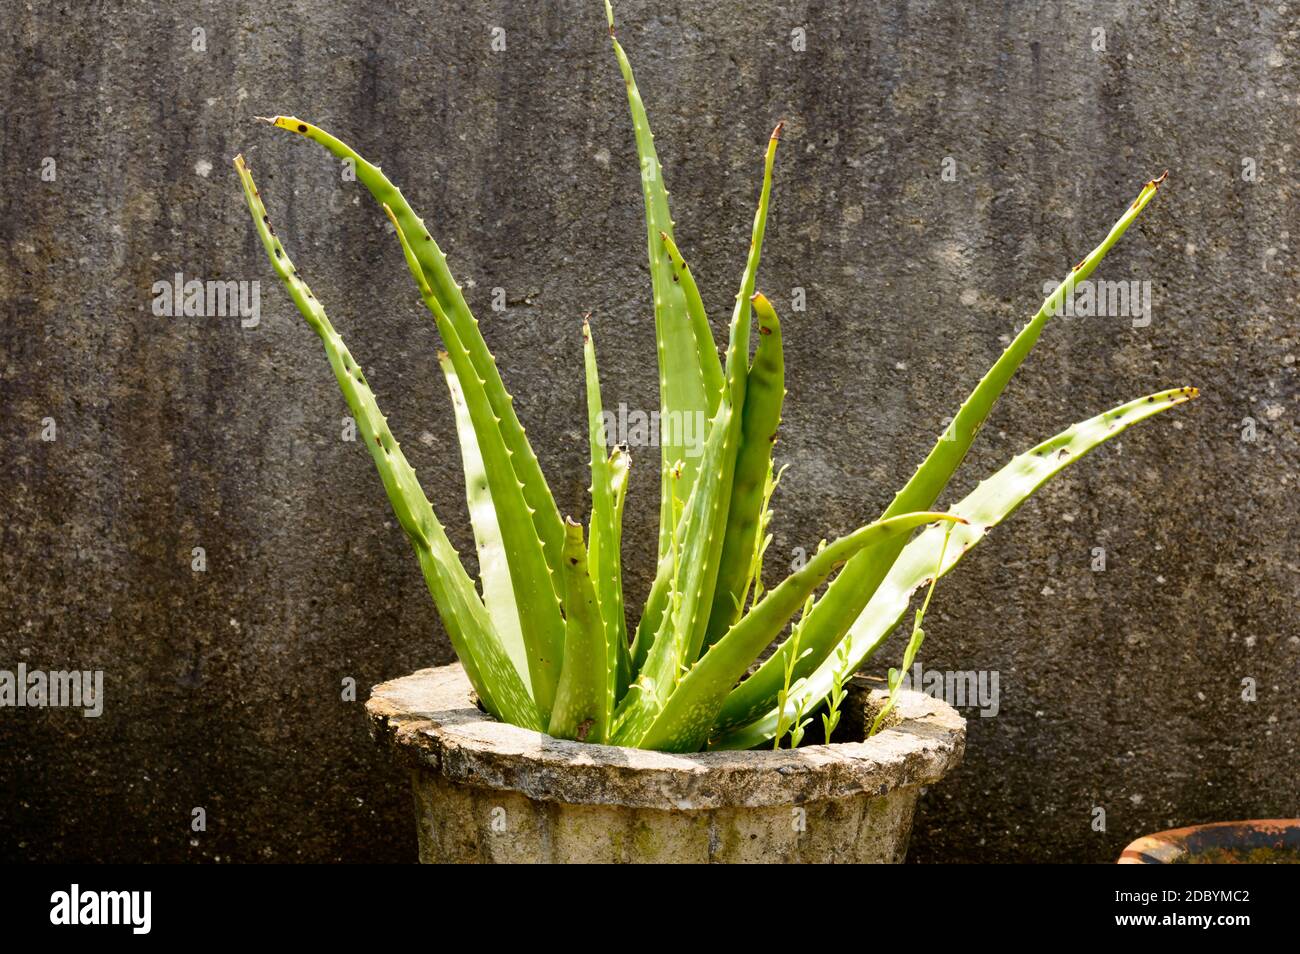 Haus Pflanzen Knollen. Zimmerpflanze Aloe Vera Pflanze mit grünen Blättern  in direktem Sonnenlicht vor grungy isolierten Hintergrund. Designelement.  Platz kopieren roo Stockfotografie - Alamy